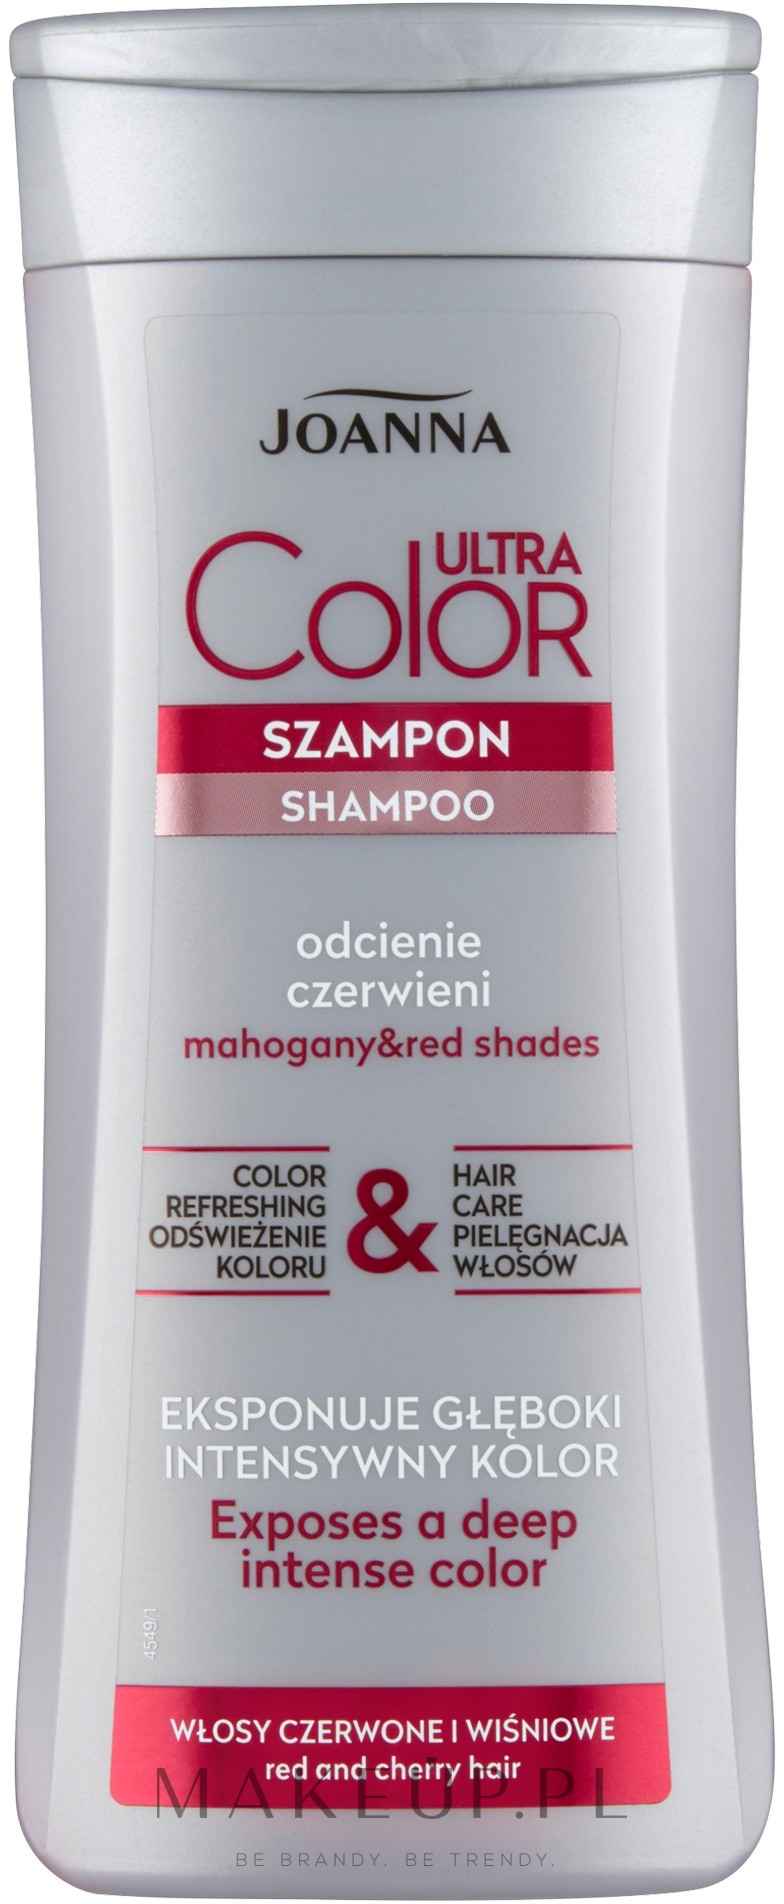 szampon do włosów w czerwonej butelce